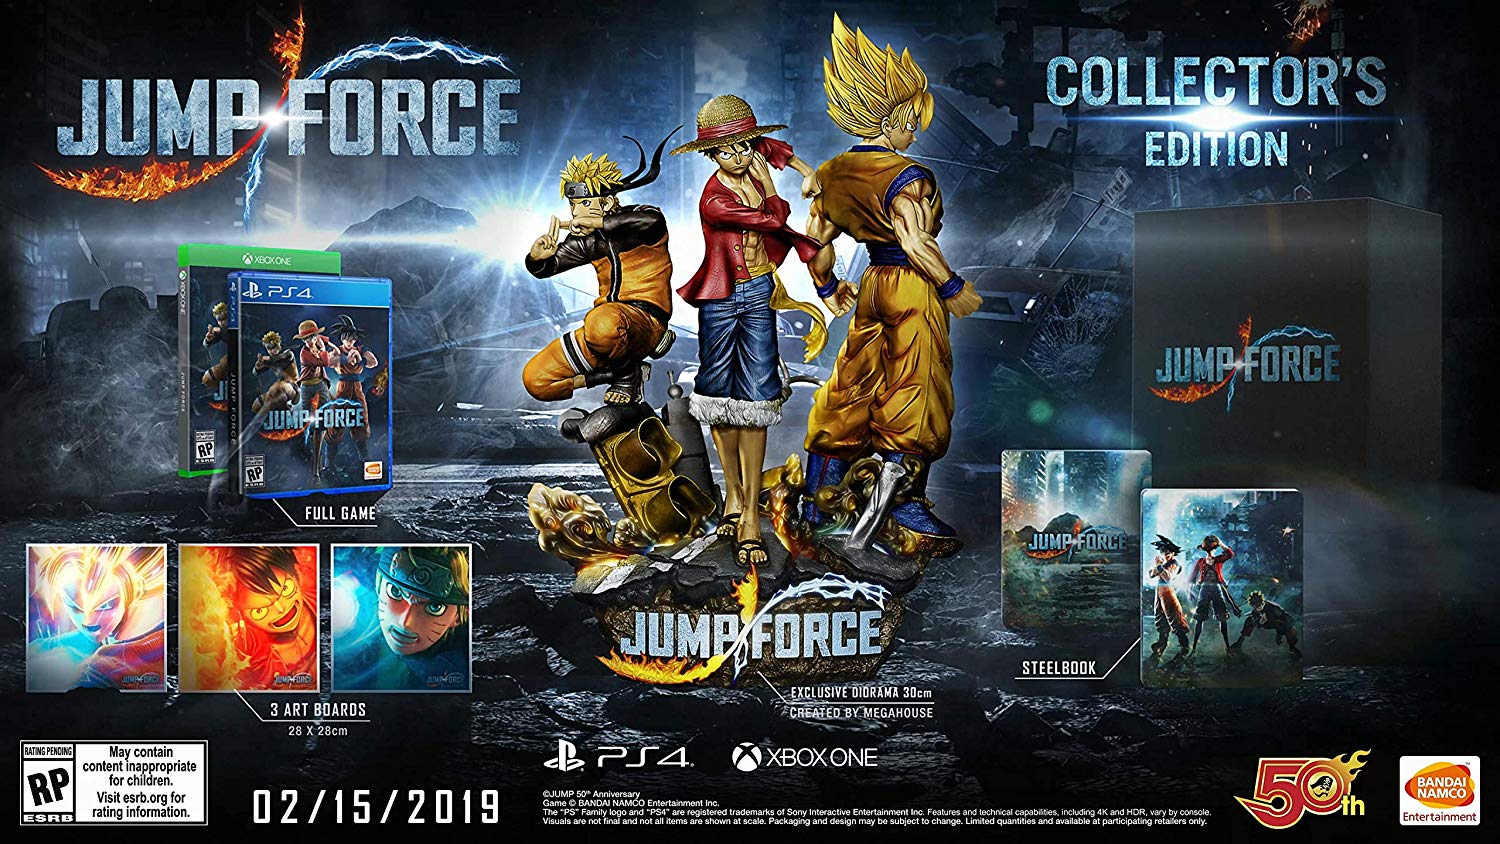 《Jump Force》豪華版售價驚人 260美元內容豐富